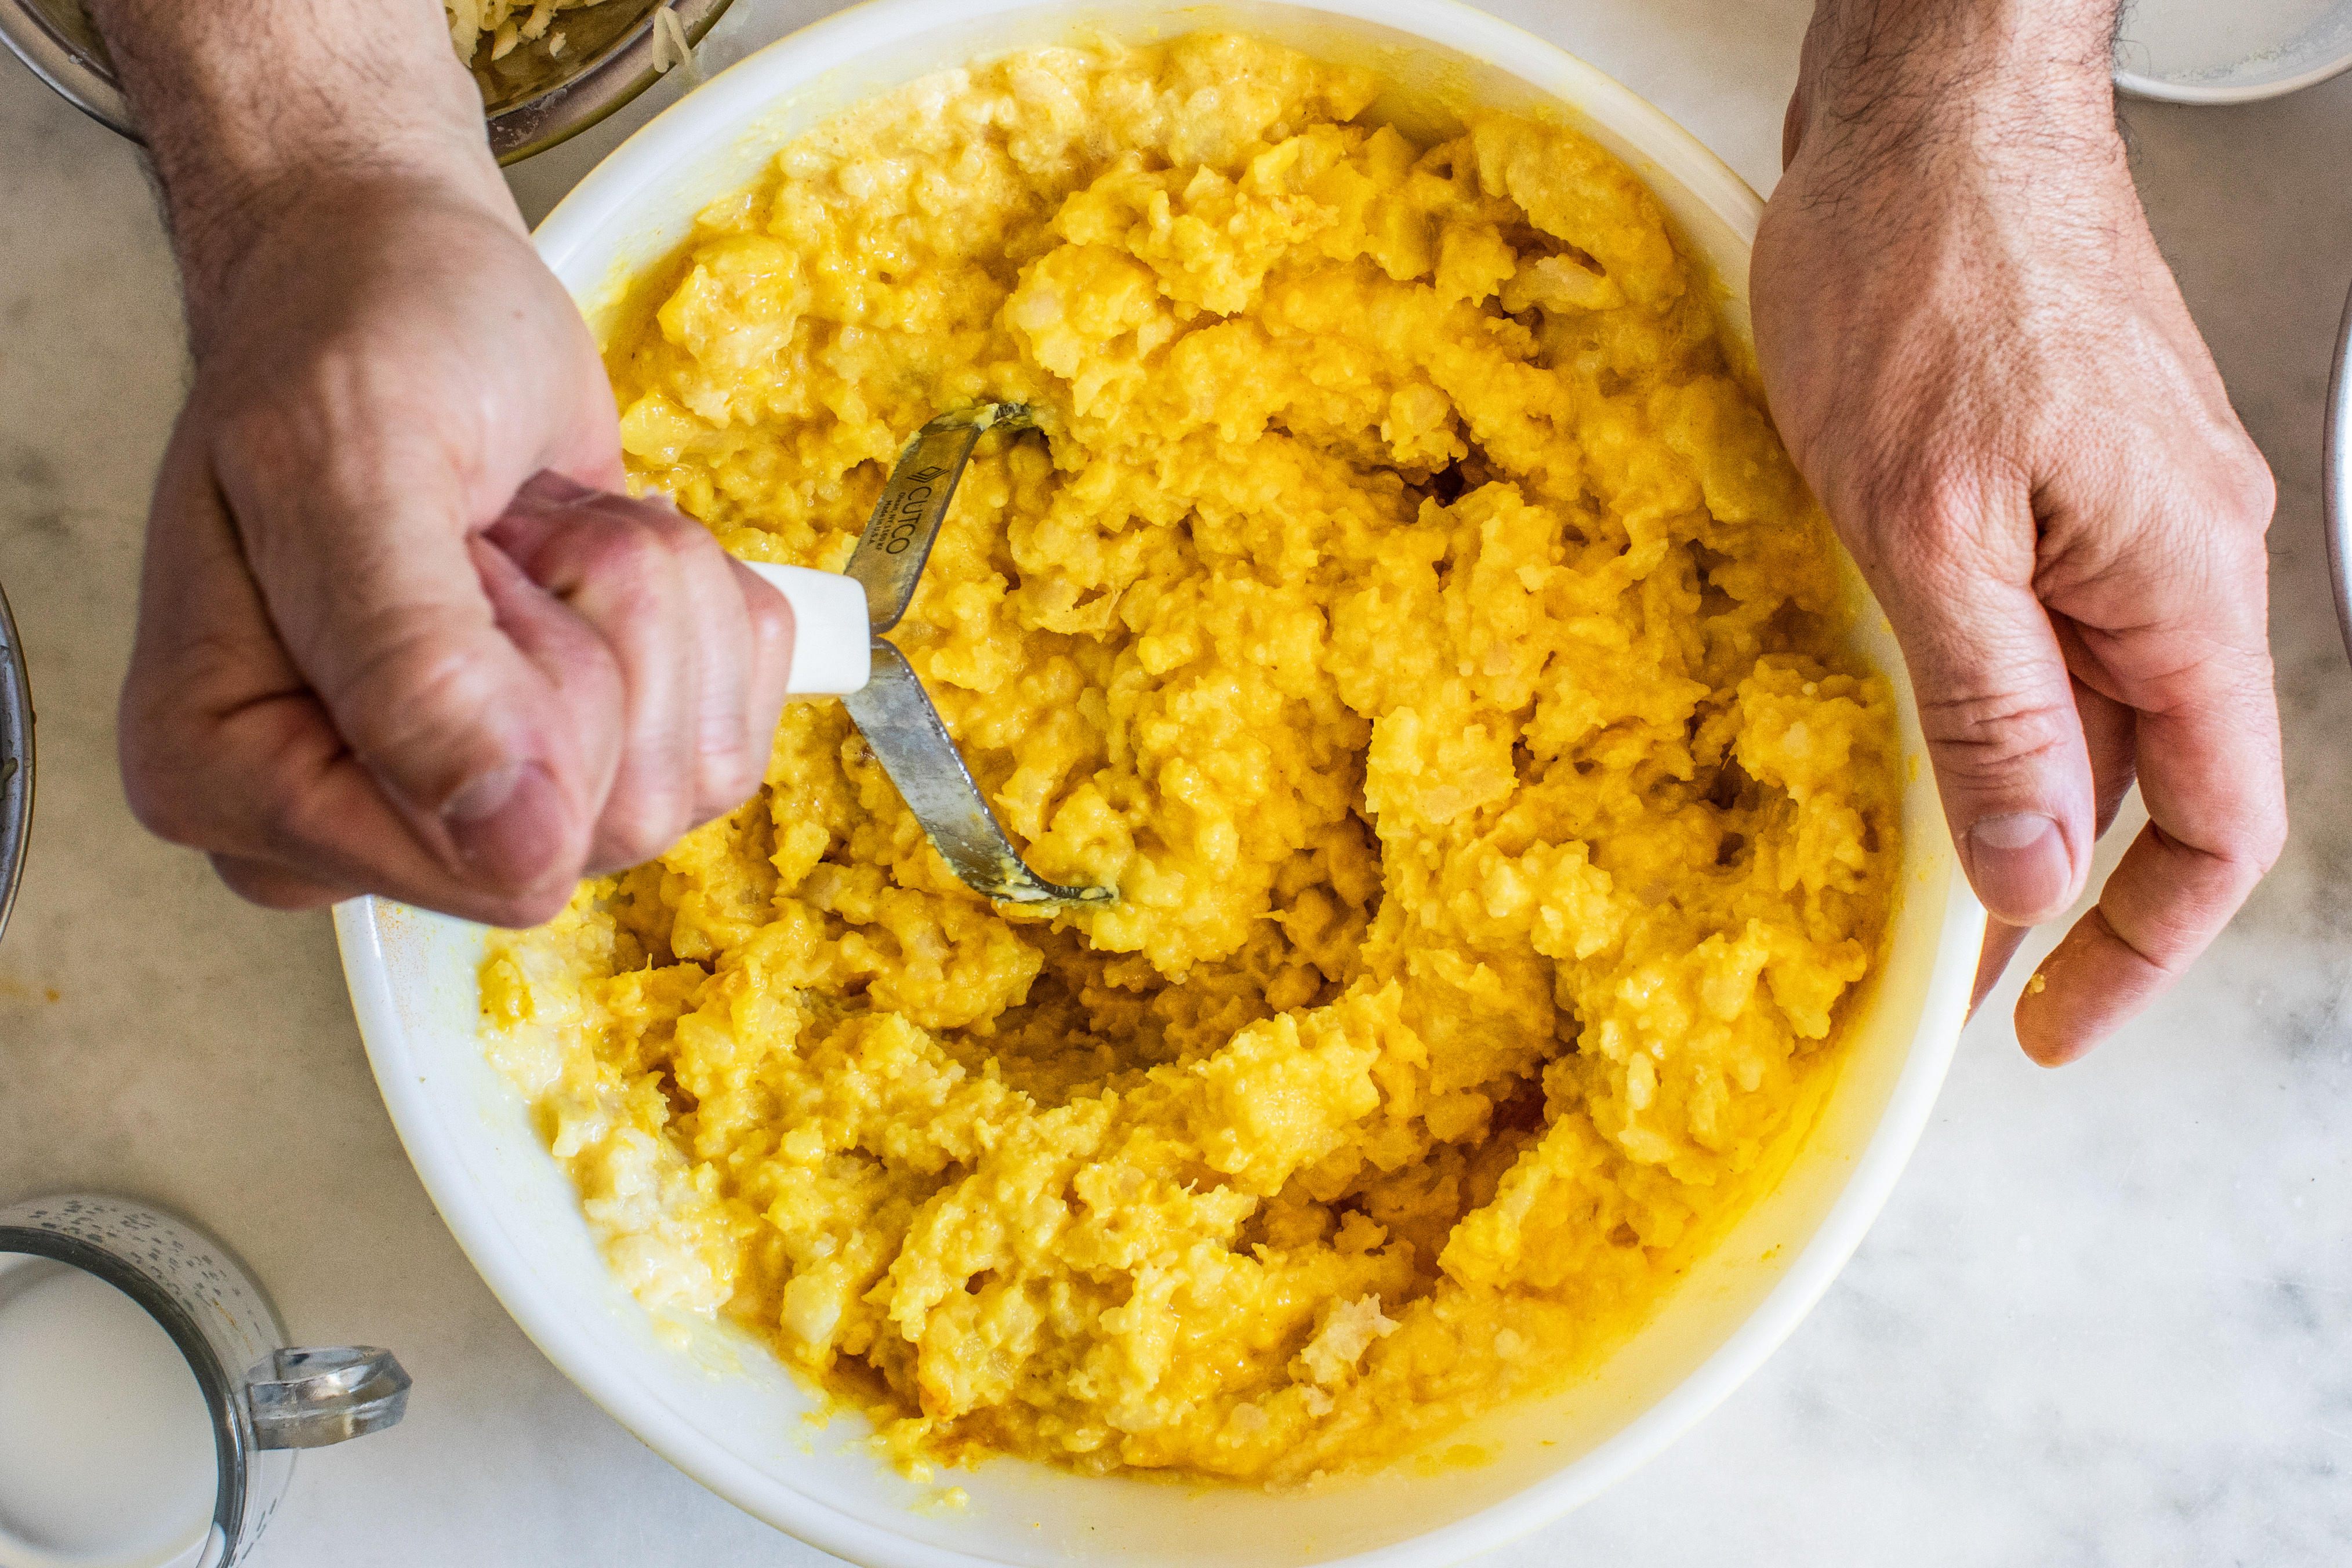 Las papas se mezclan con crema, huevos y queso y se machacan dejando todavía grumos para elaborar un pastel de papas con queso (Andrew Scrivani/The New York Times).